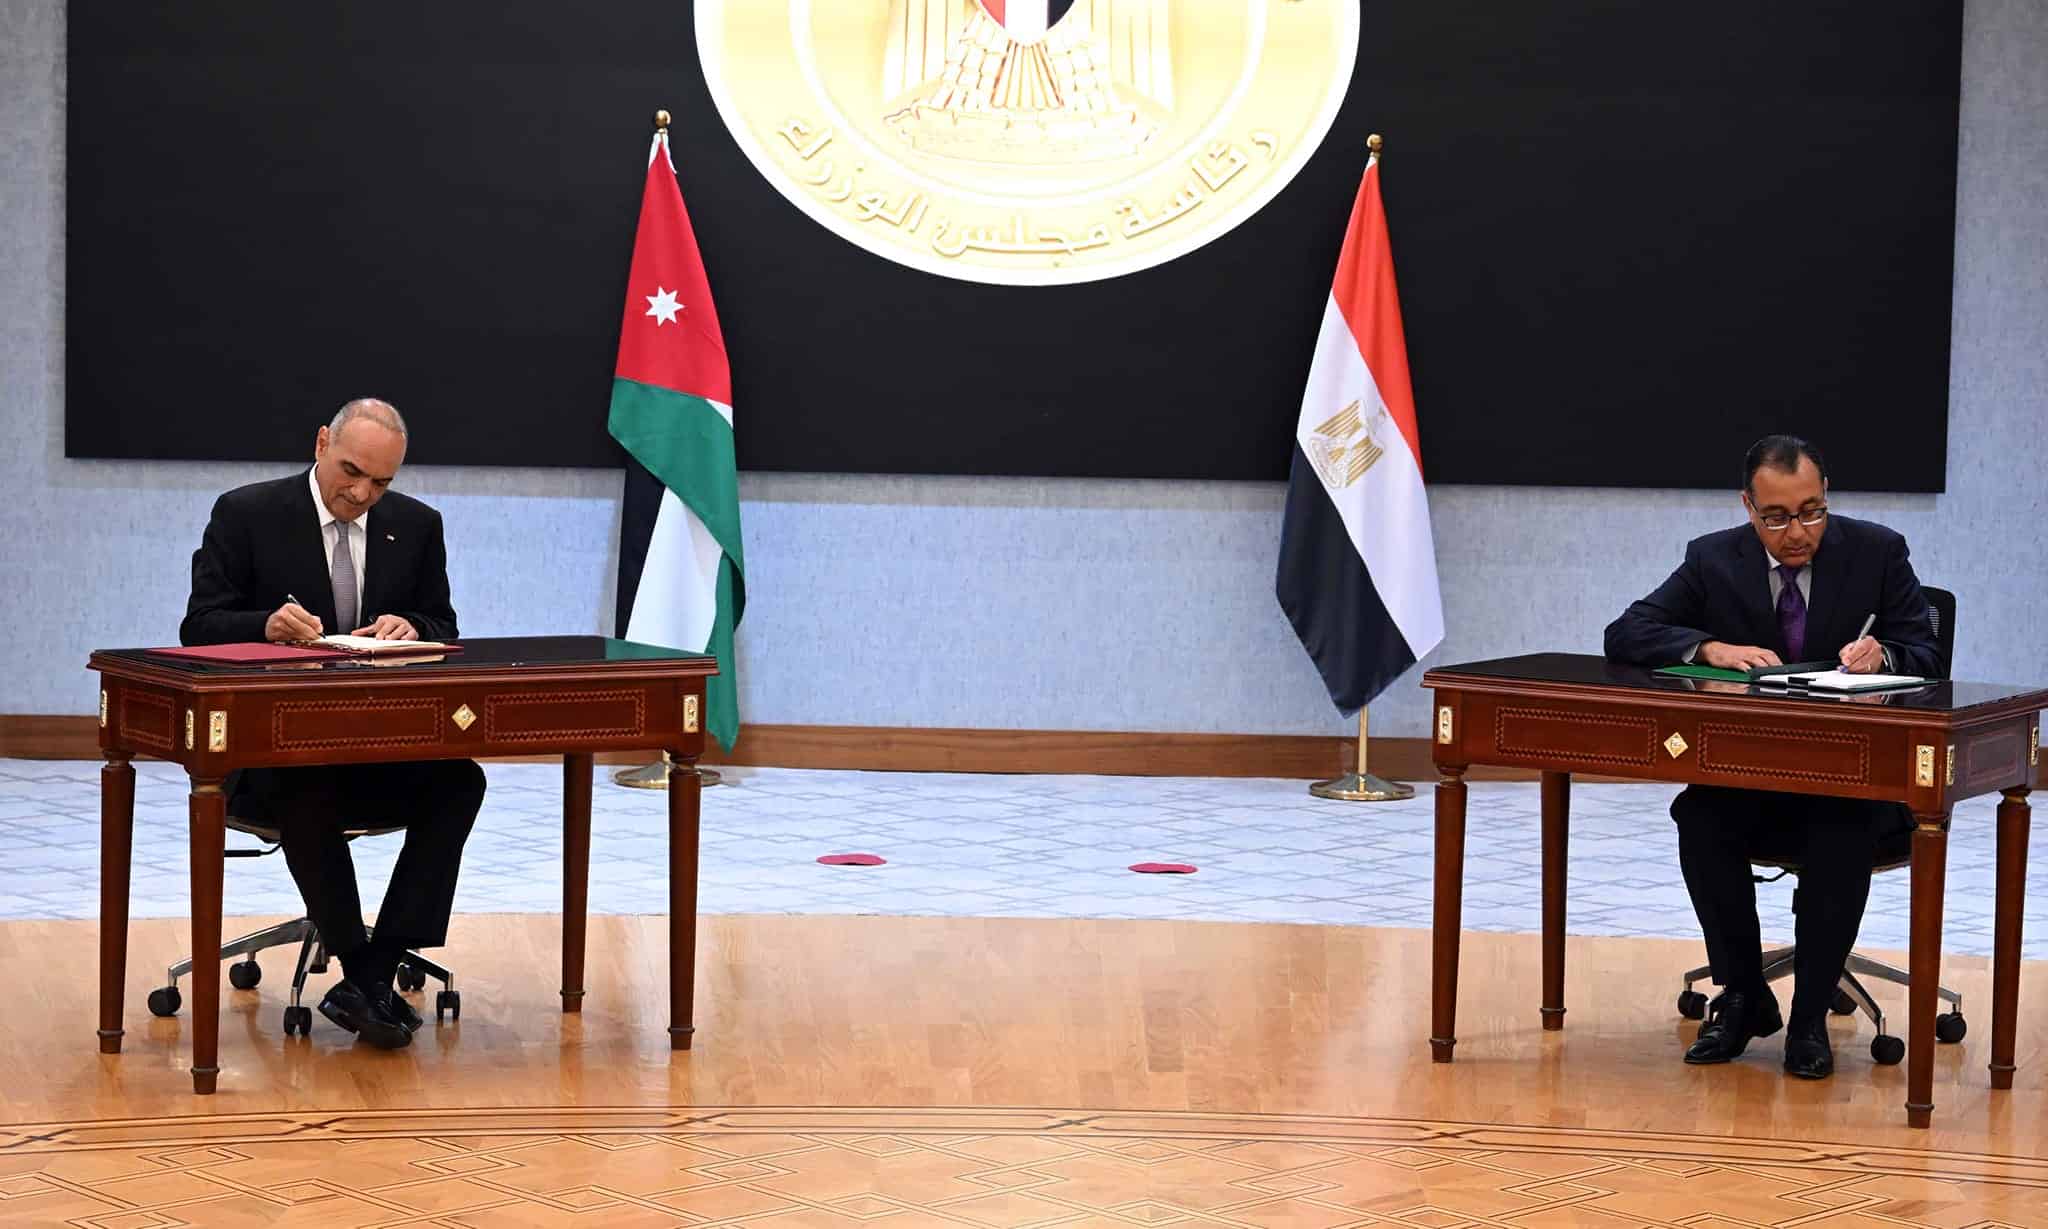 مدبولي يوقع محضر أعمال اللجنة العليا المصرية الأردنية المشتركة
